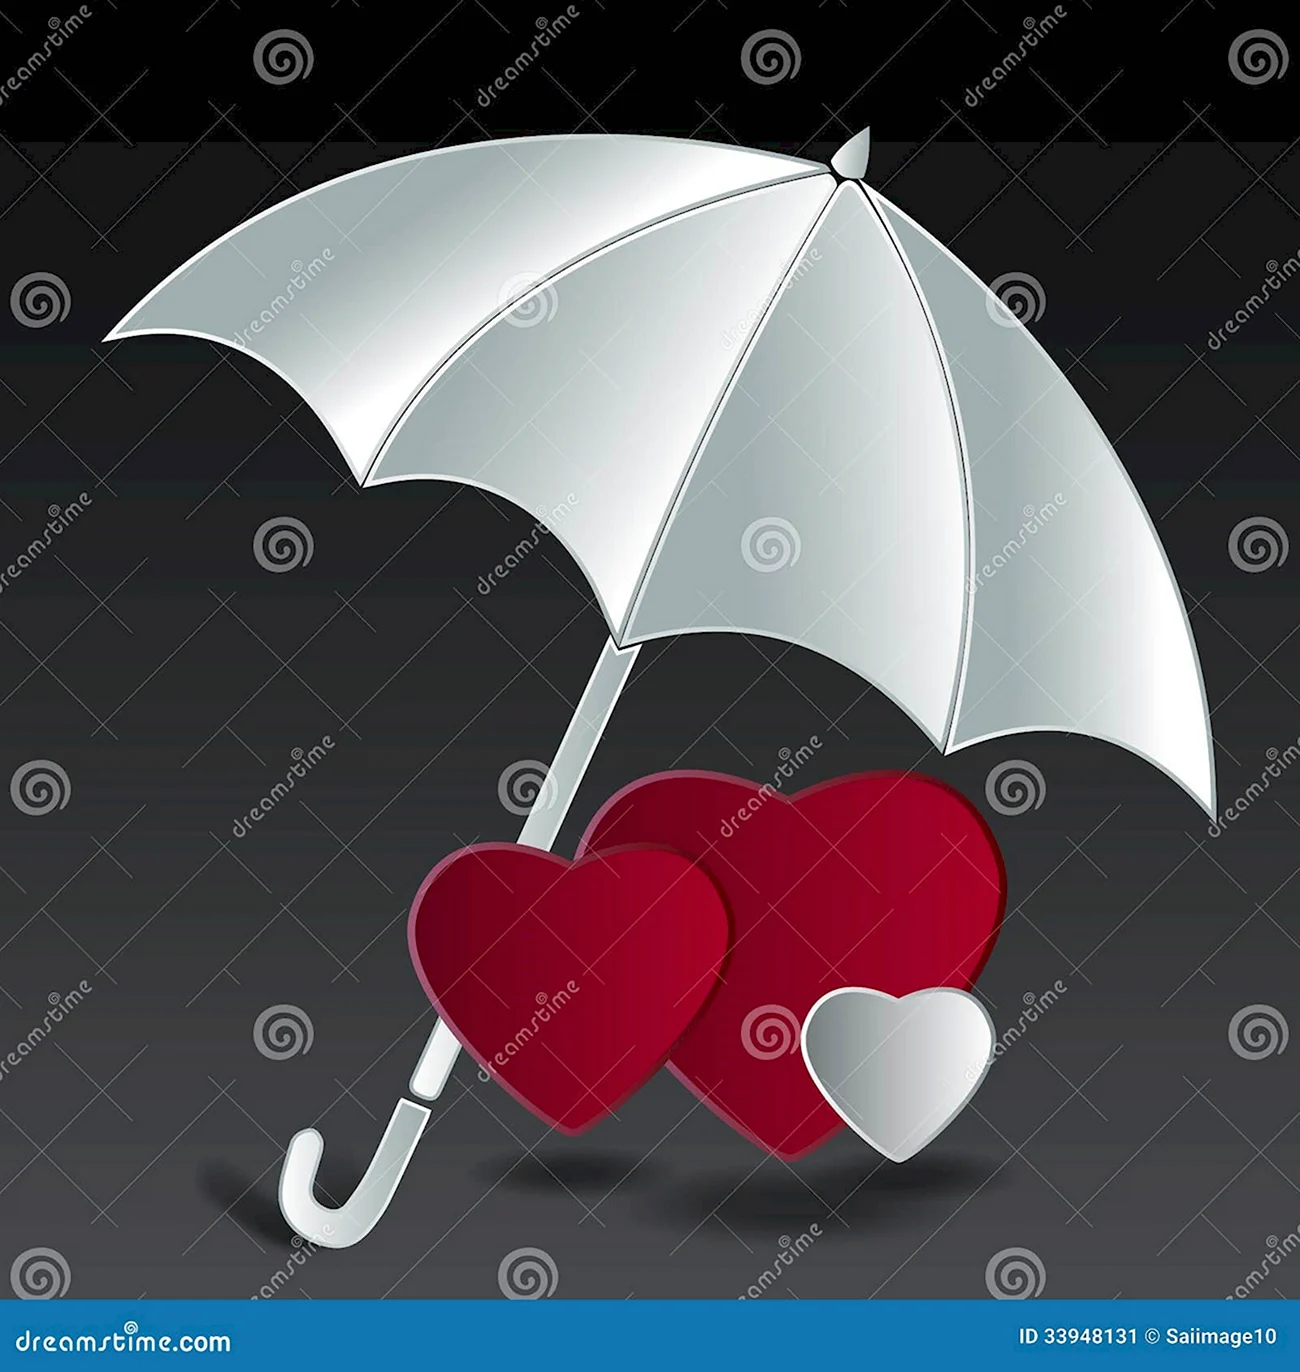 Сердце под зонтиком. Красивая картинка